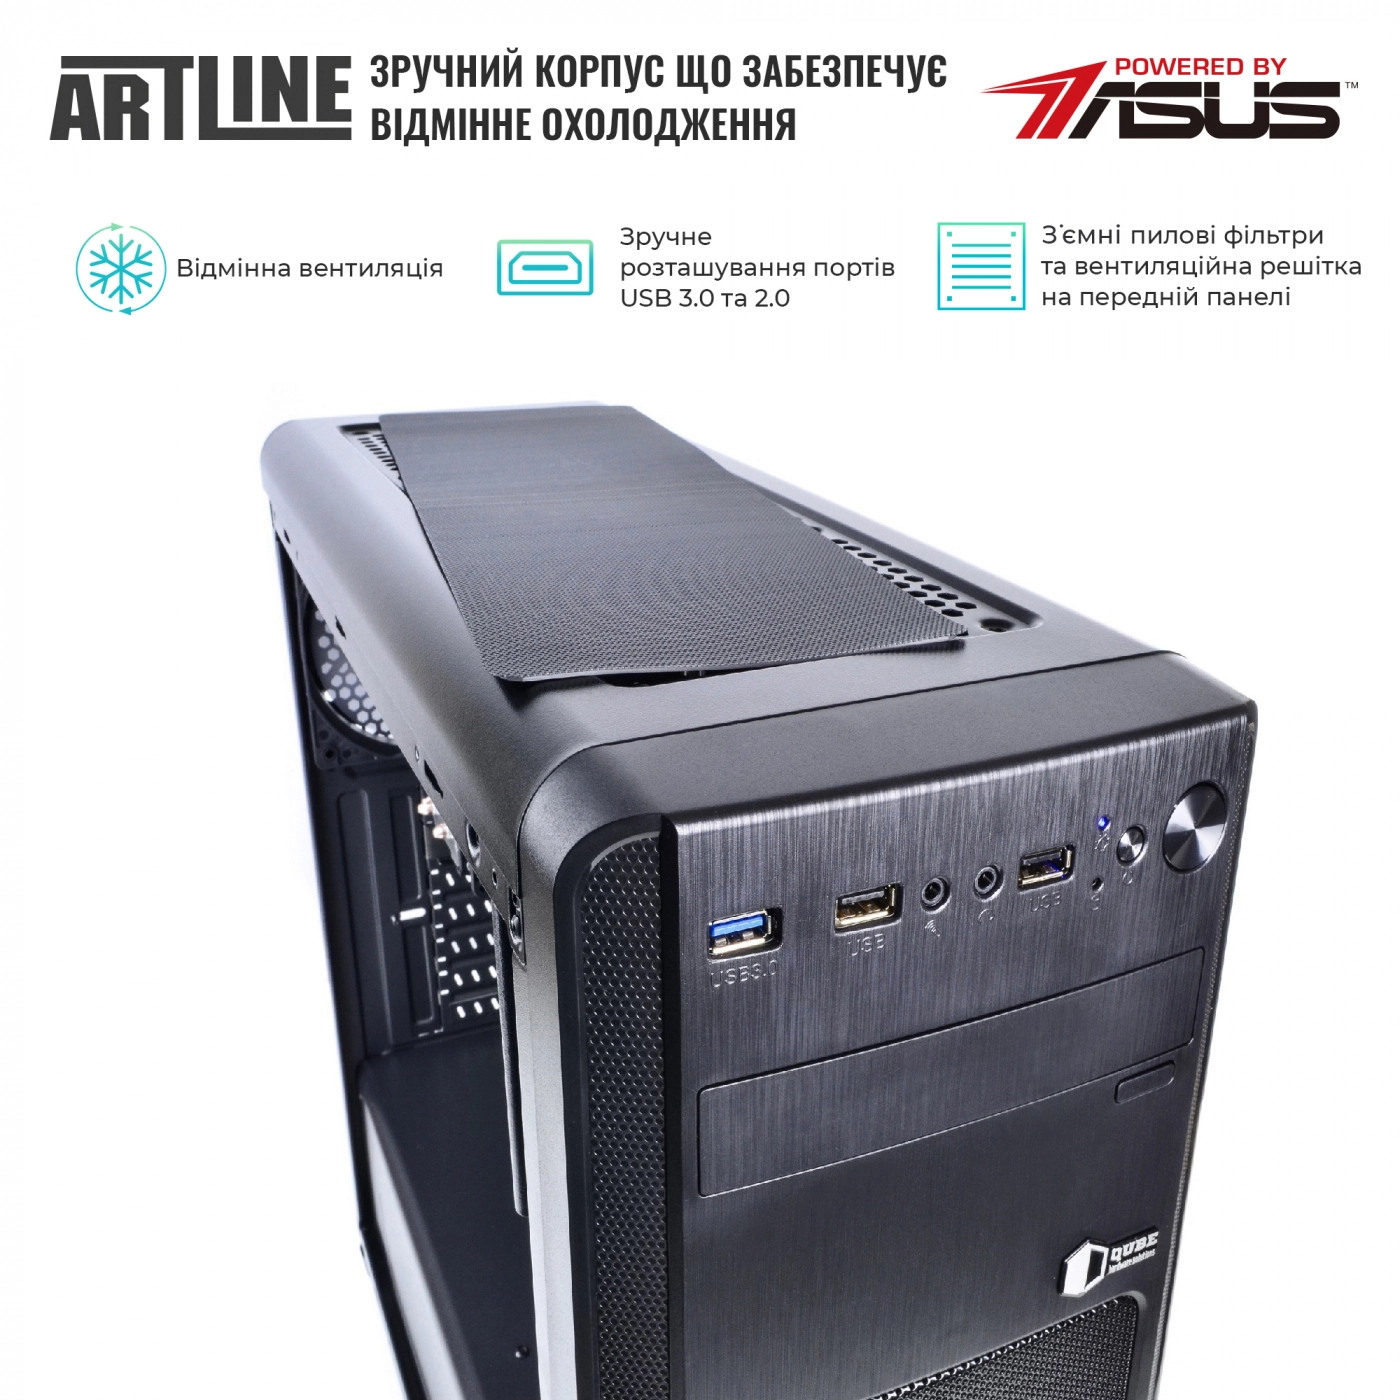 Купить Сервер ARTLINE Business T61v09 - фото 2